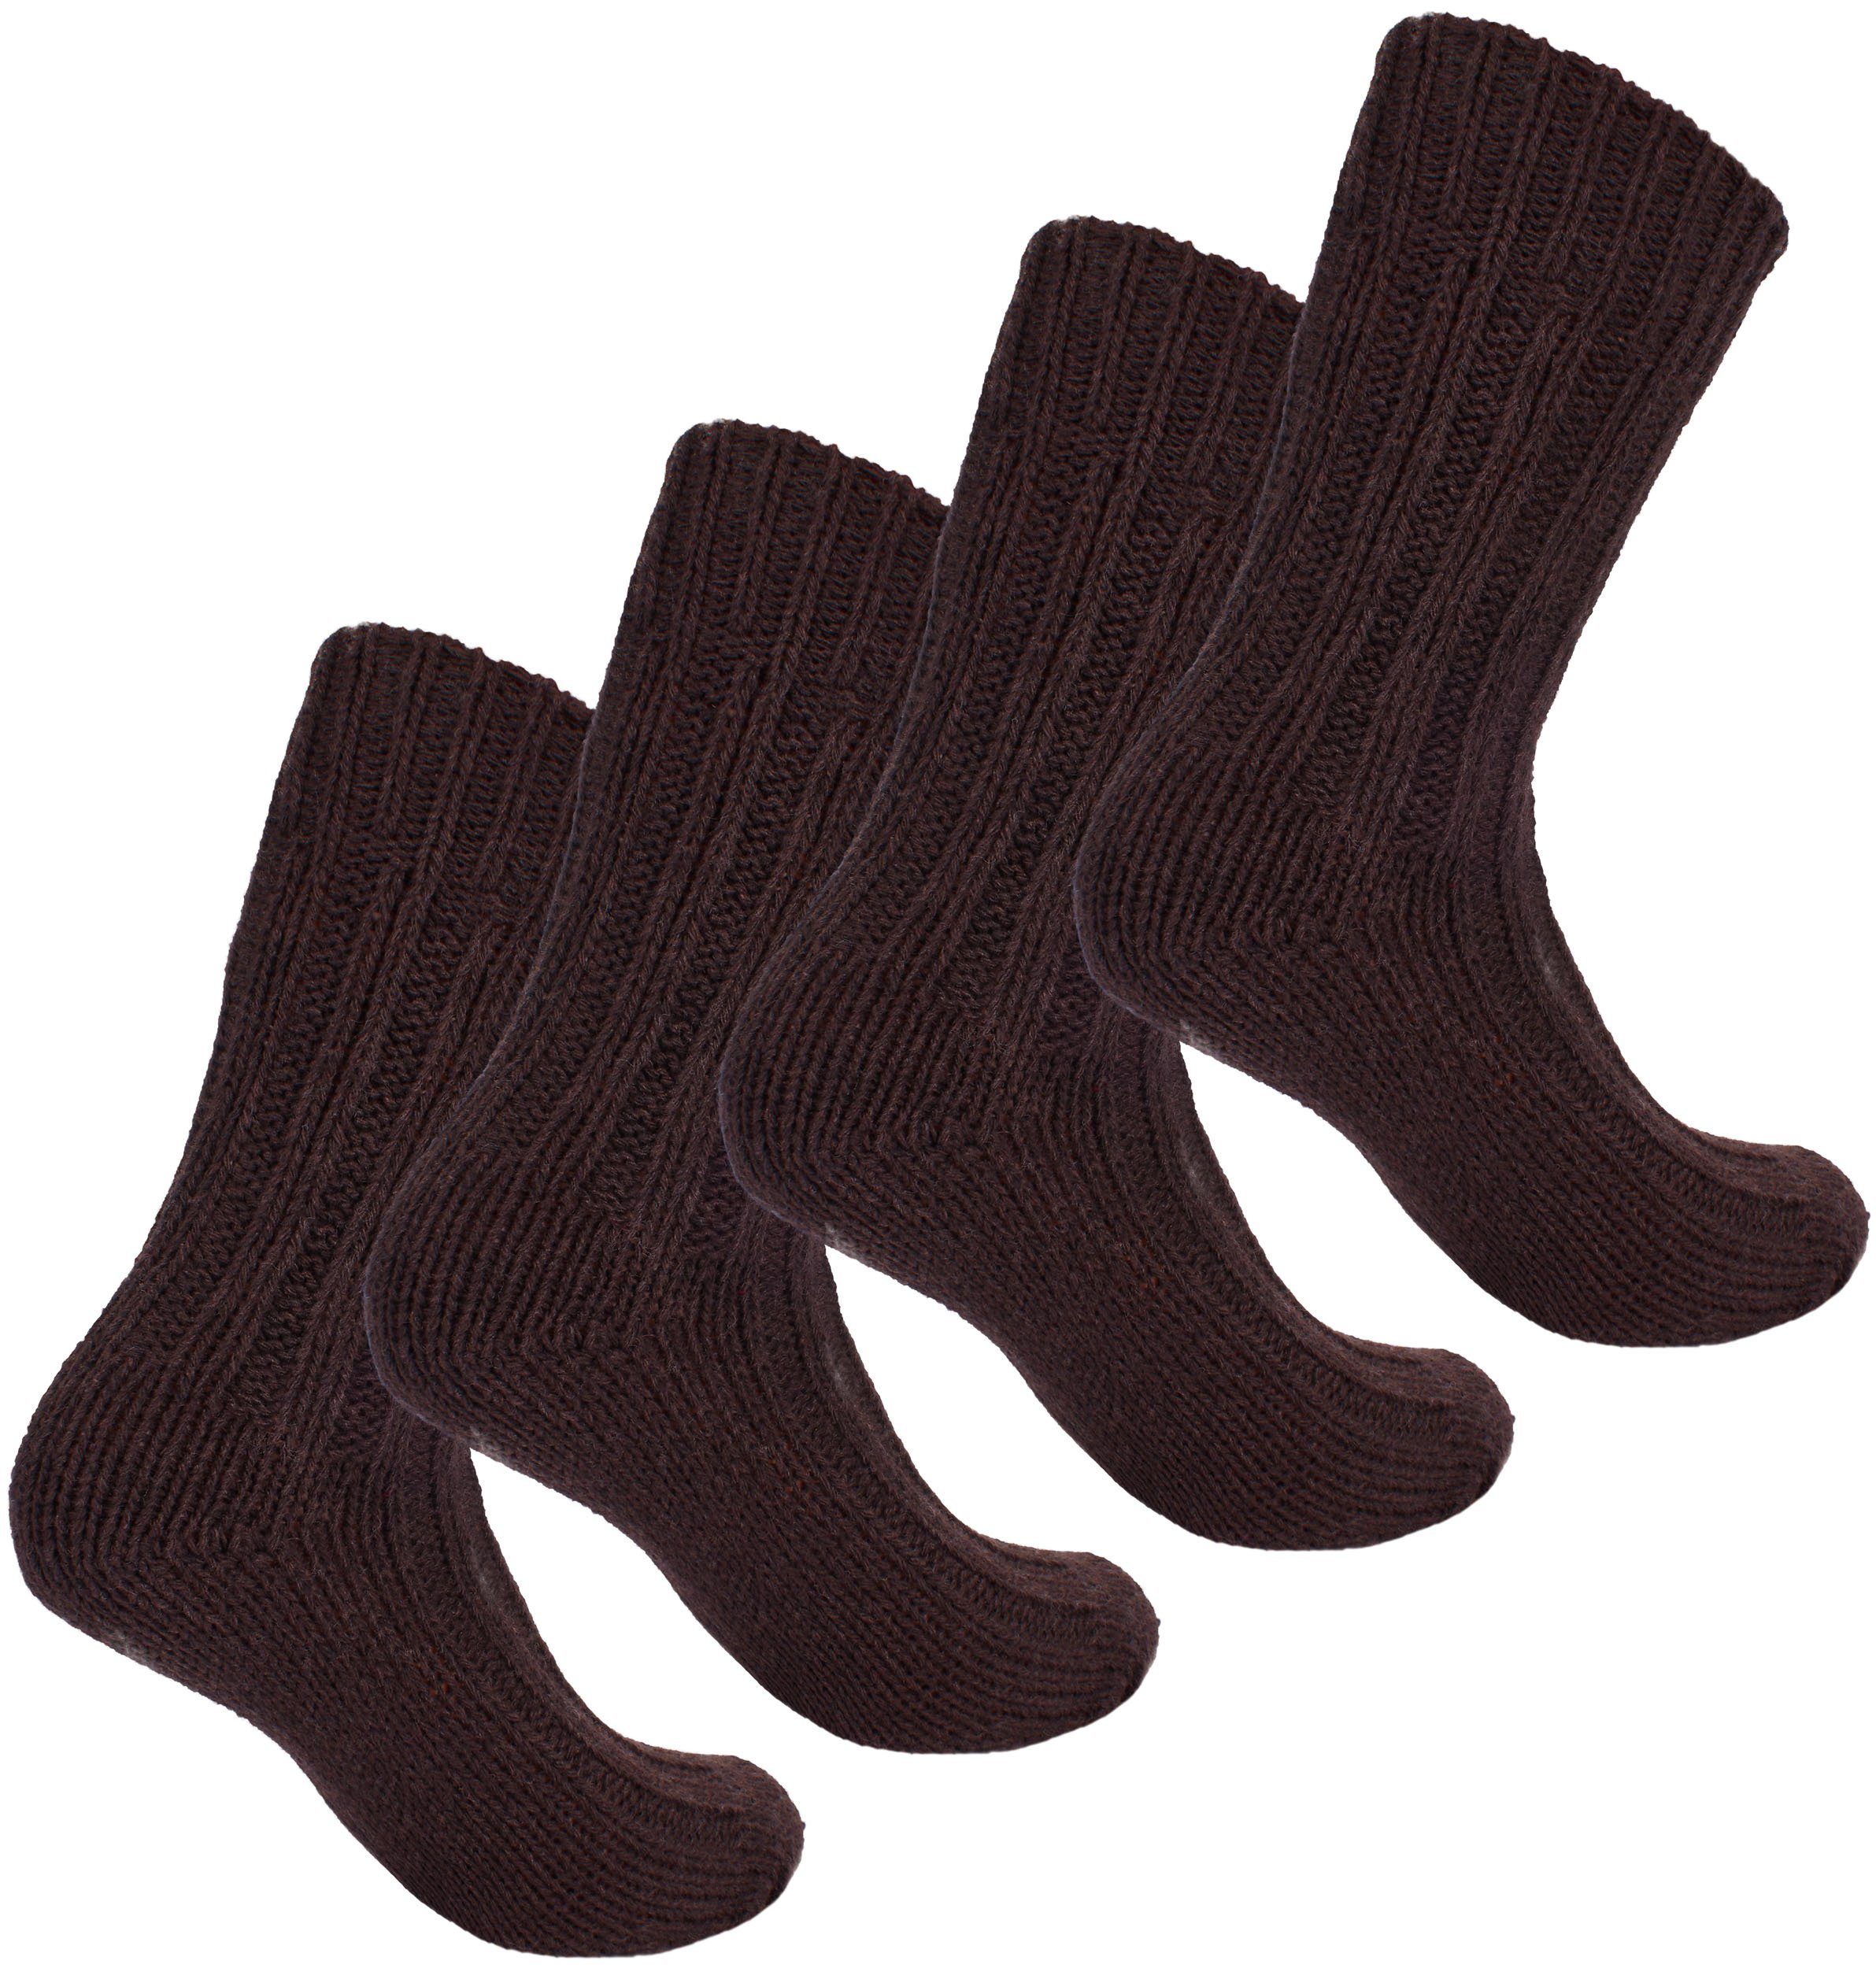 Warm Flauschig Herren Socken Damen Winter Stricksocken (2-Paar) Wintersocken Wollsocken und für mit BRUBAKER - Braun - und Thermosocken - Set Schafwolle